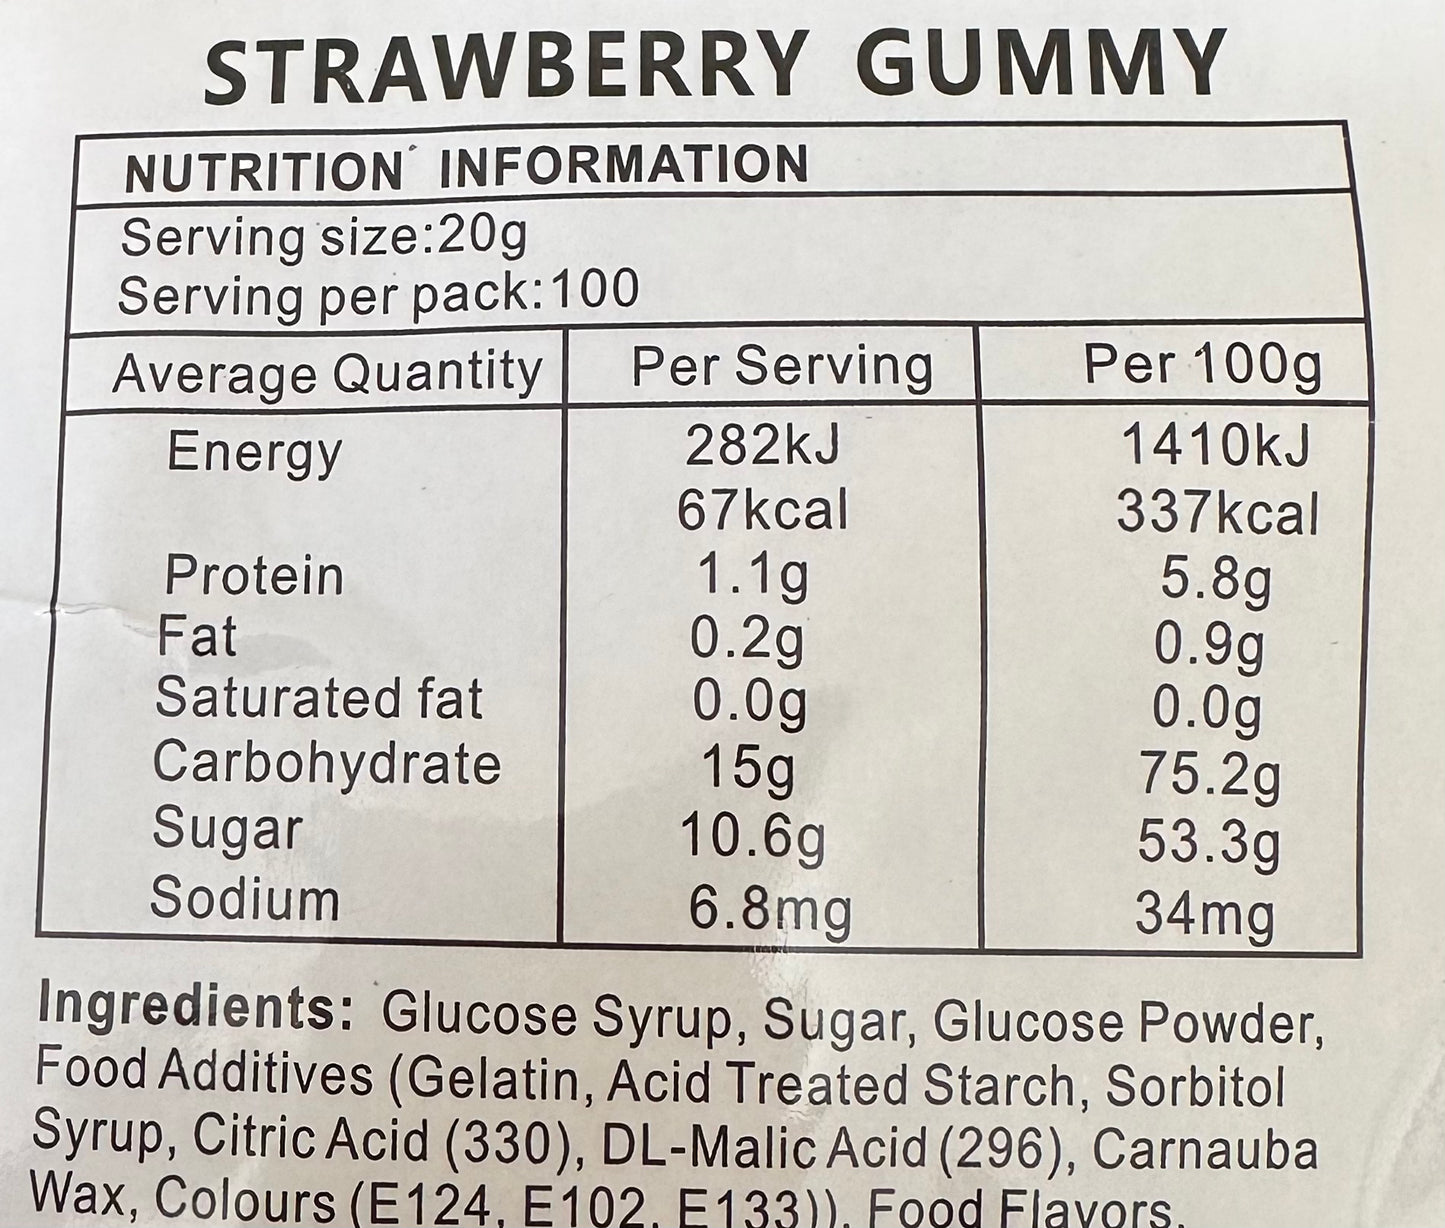 Gummy Strawberries